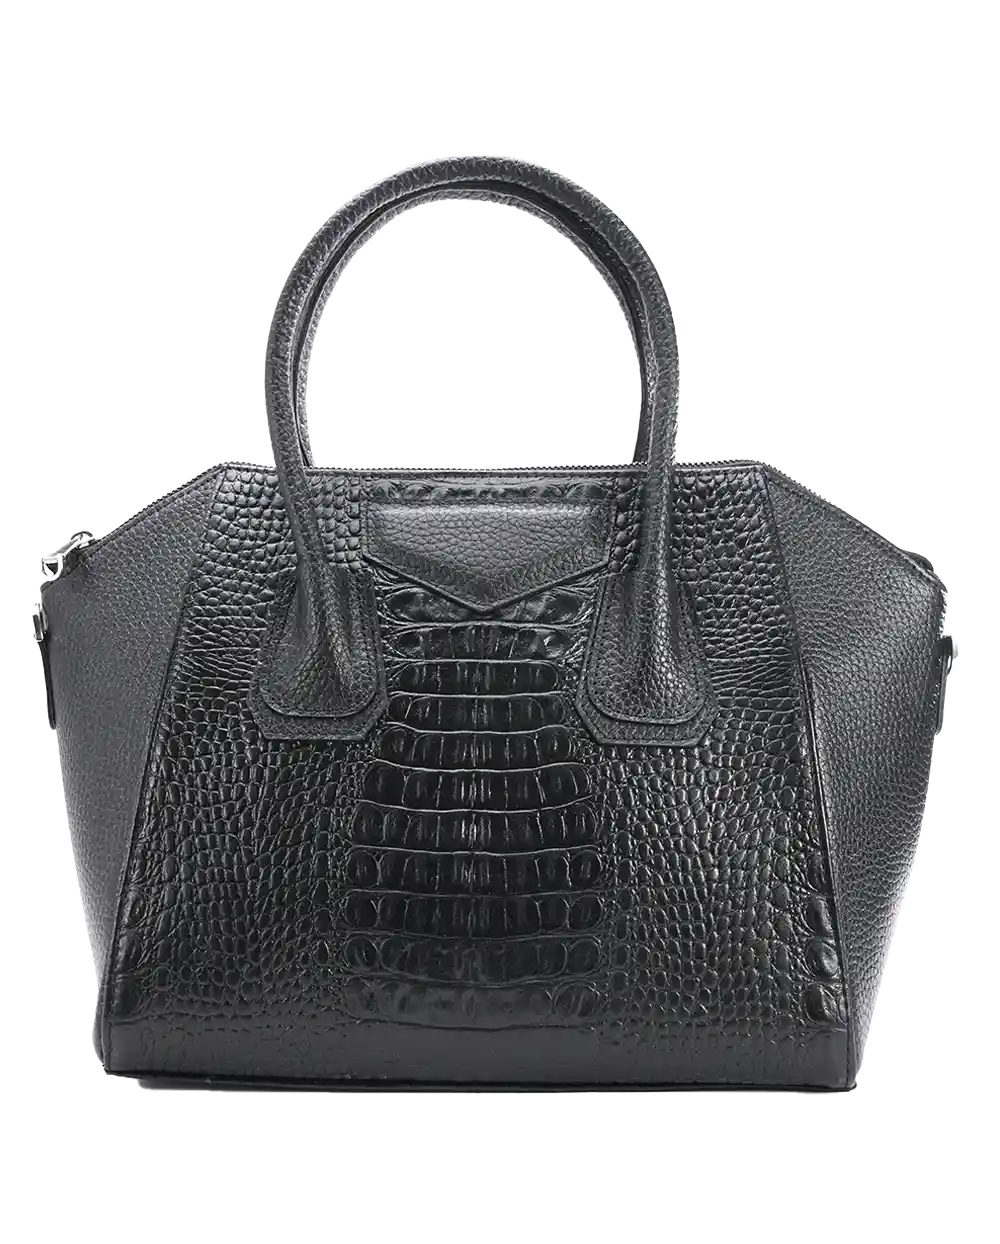 خرید کیف دوشی زنانه چرم طبیعی طرح دِلین مدل 1589 سایز بزرگ با بهترین قیمت به همراه 6 ماه گارانتی معتبر و ارسال رایگان | کیف رودوشی زنانه چرمی